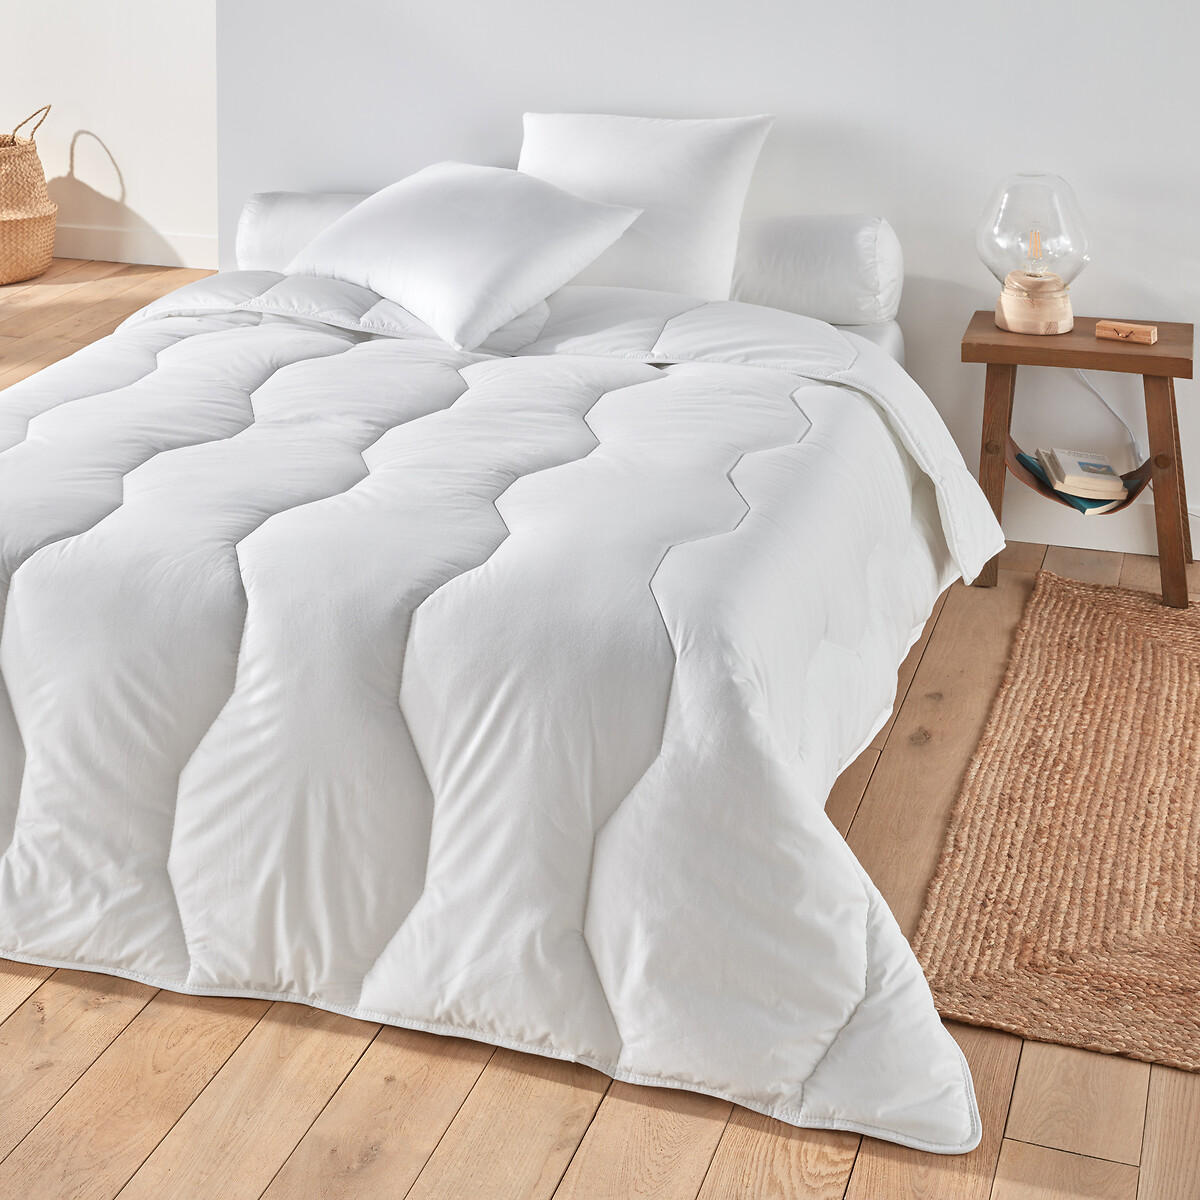 Одеяло Синтетическое Prestige Hollofil высшее качество 240 x 220 см белый